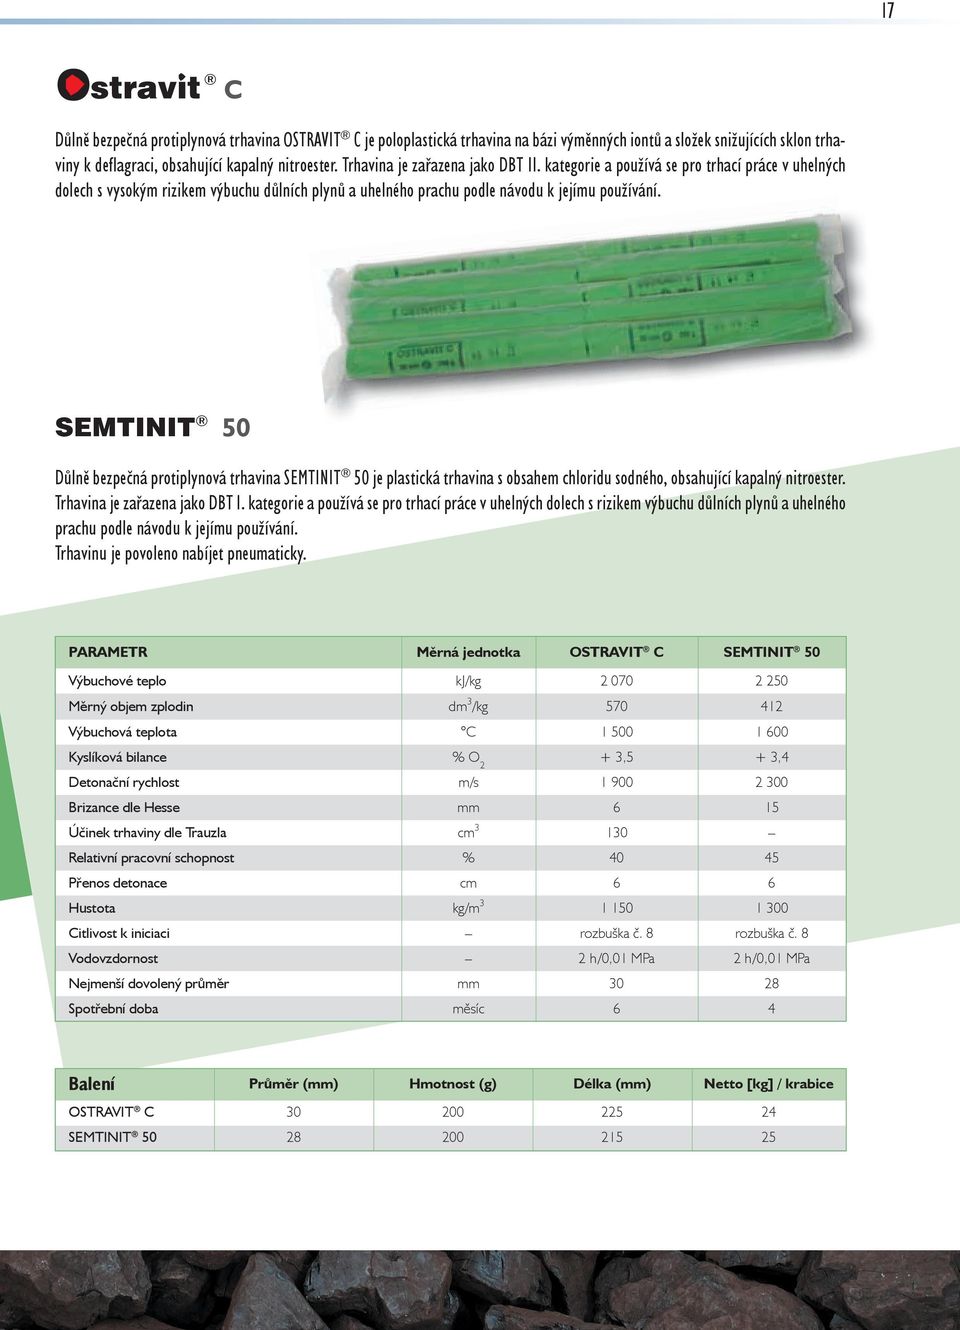 SEMTINIT 50 Důlně bezpečná protiplynová trhavina SEMTINIT 50 je plastická trhavina s obsahem chloridu sodného, obsahující kapalný nitroester. Trhavina je zařazena jako DBT I.